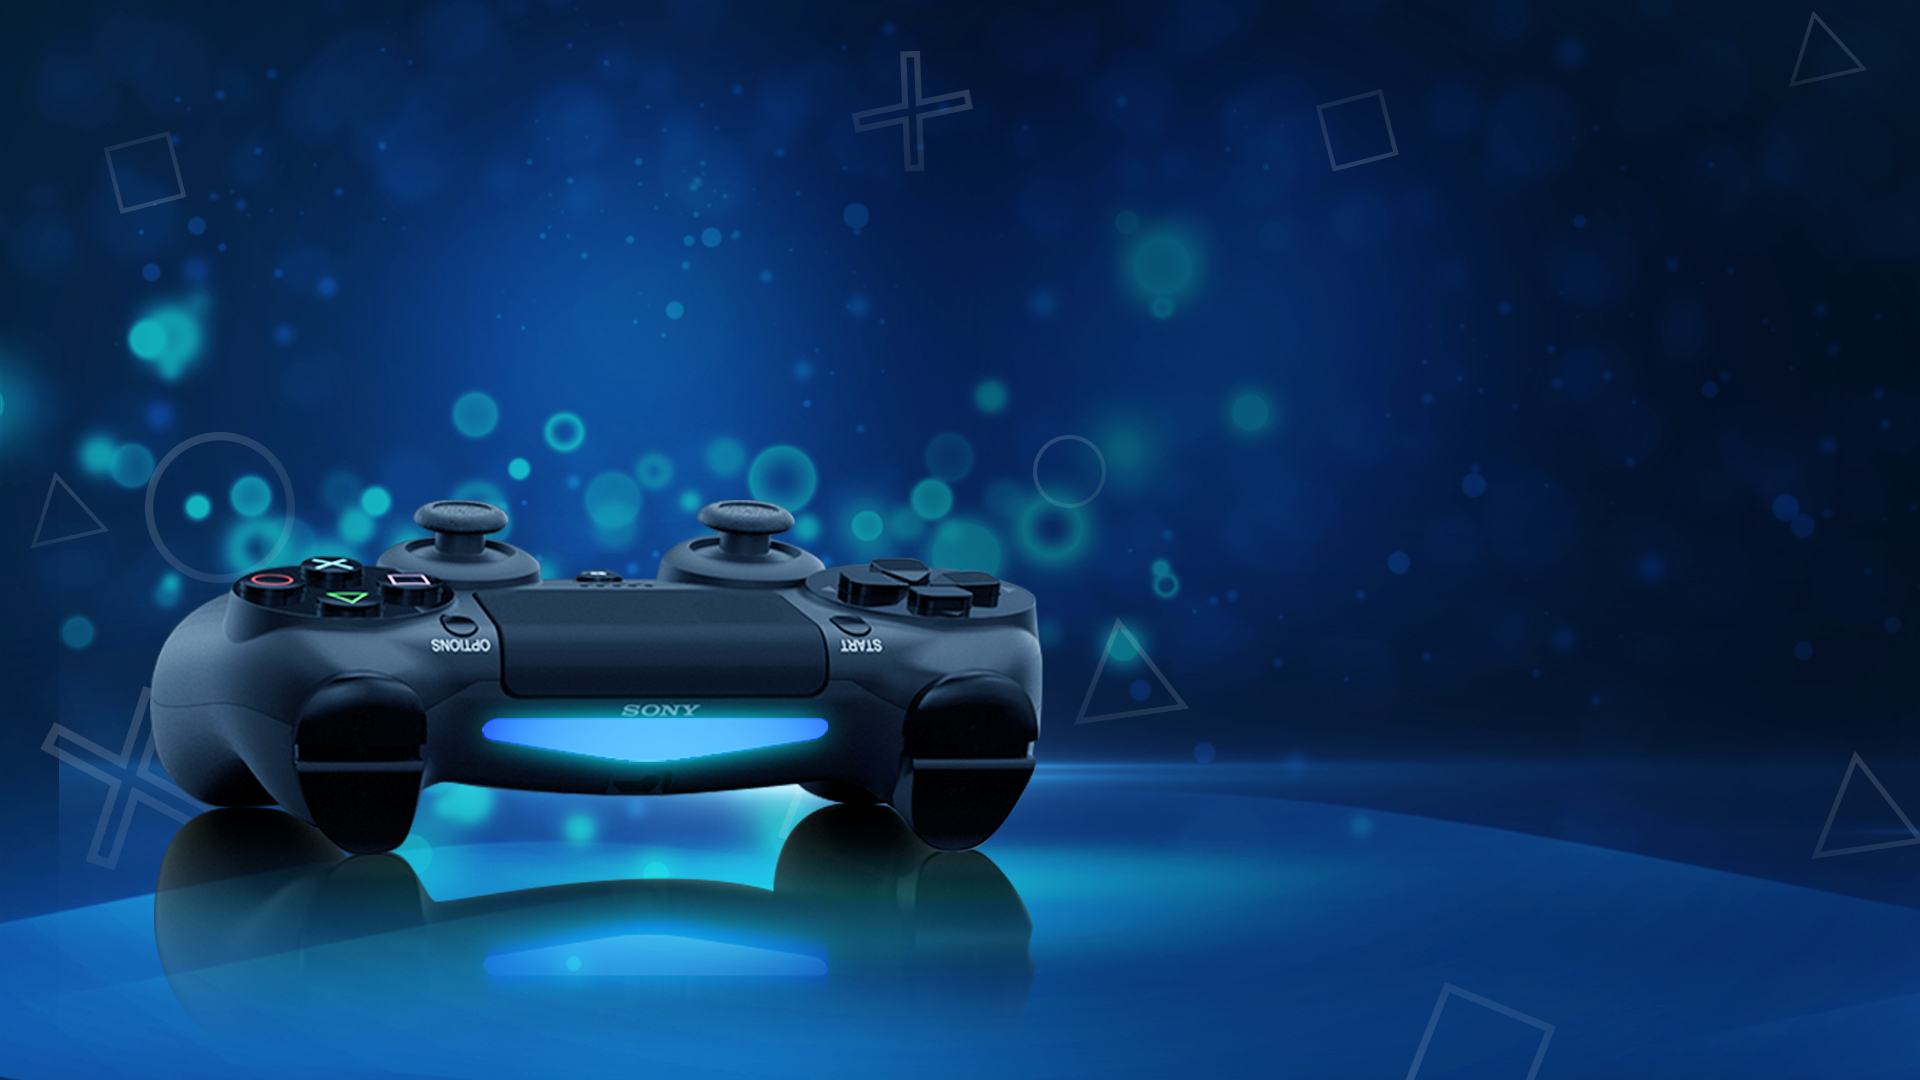 🎮 Sony zapustyla sajt pro PlayStation 5: koly predstavljať, cina ta harakterystyky konsoli